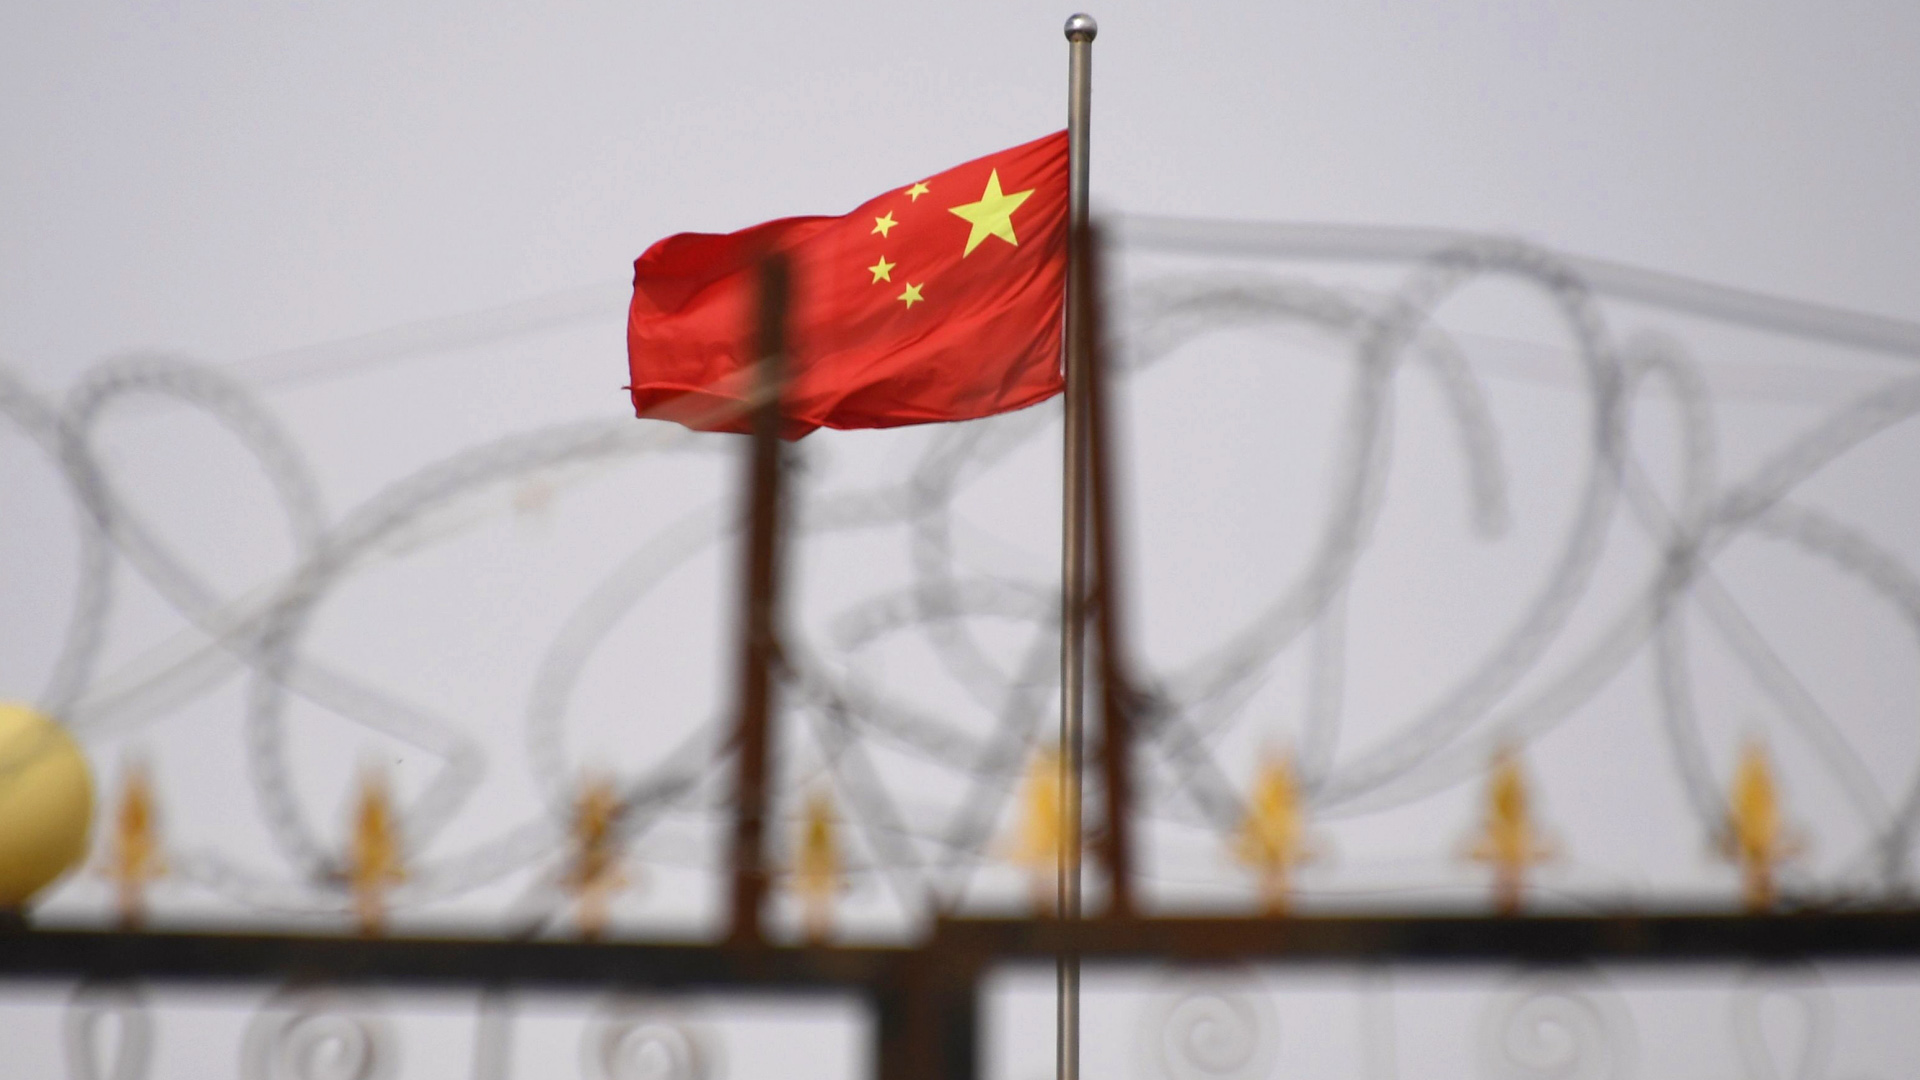 Kommentar zu “Xinjiang Police Files”: Schluss mit dem Verdrängen